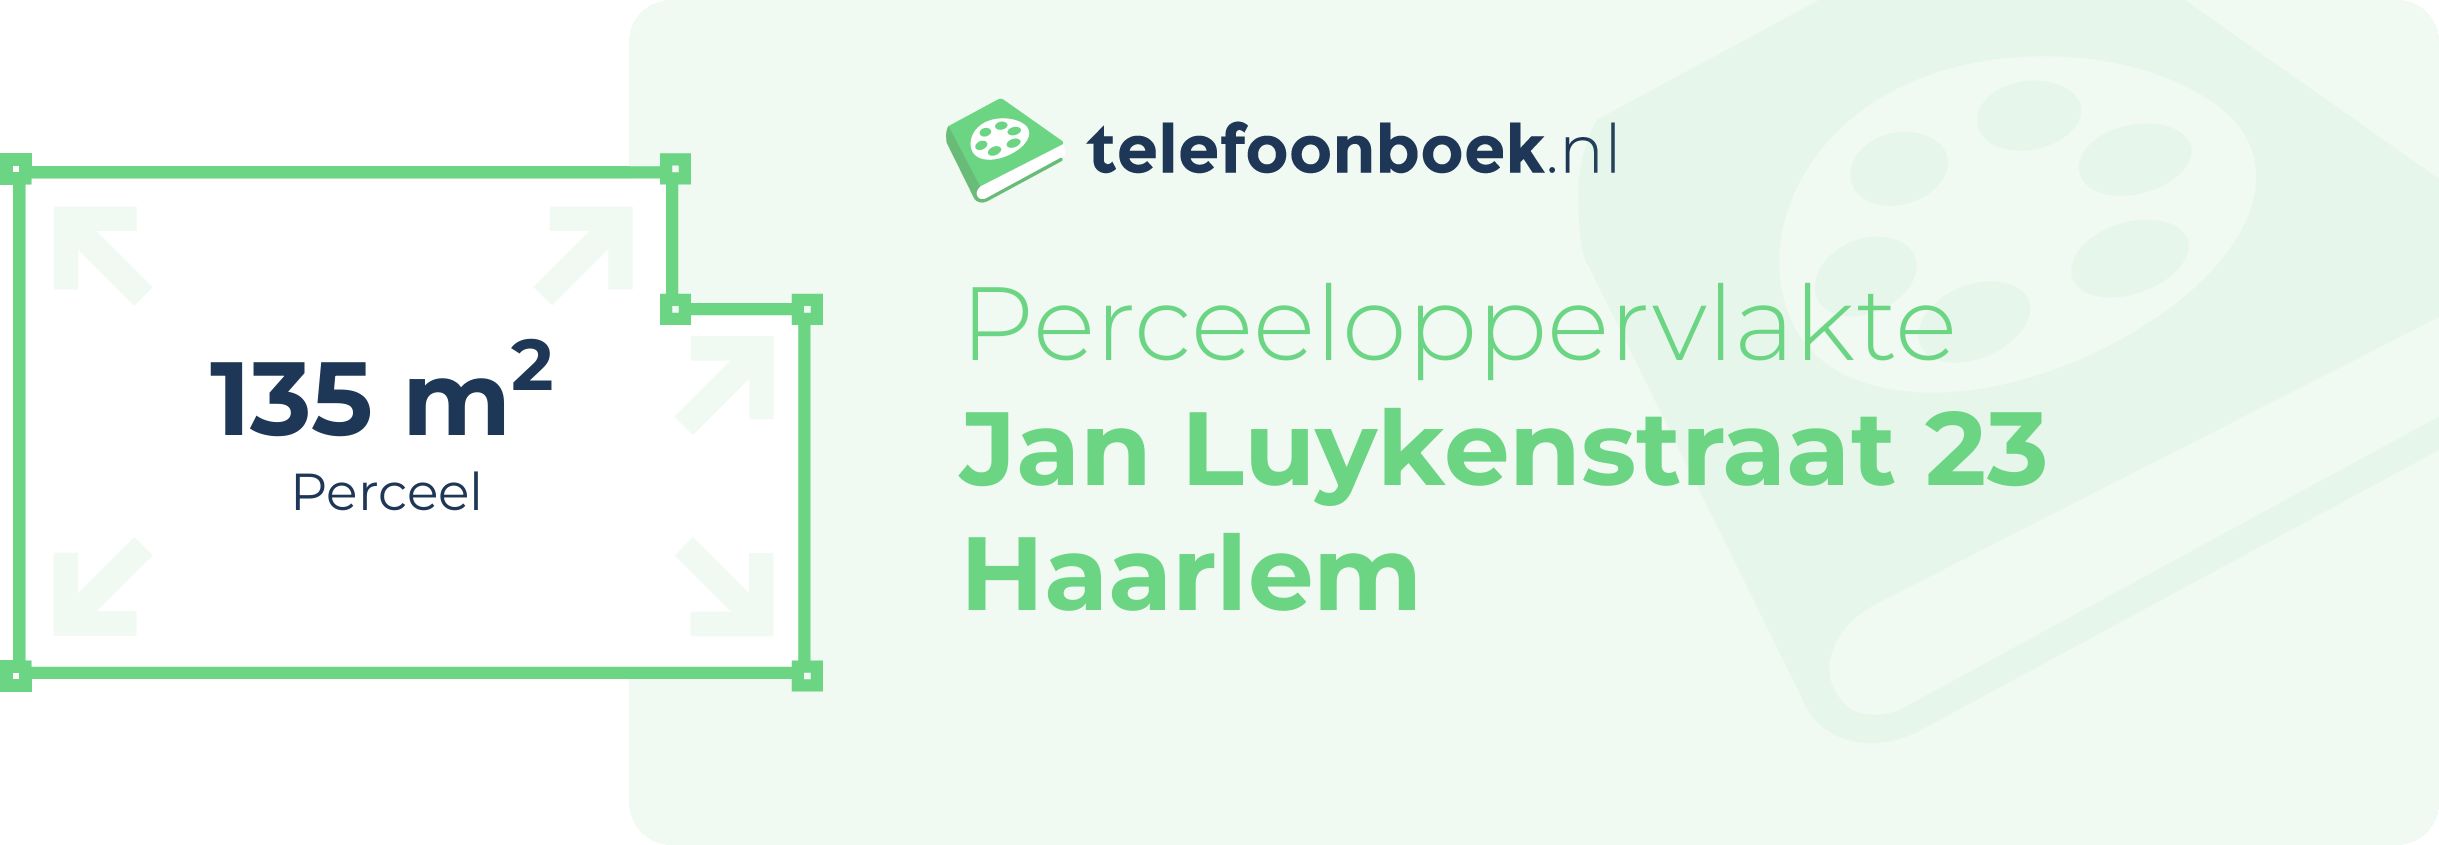 Perceeloppervlakte Jan Luykenstraat 23 Haarlem